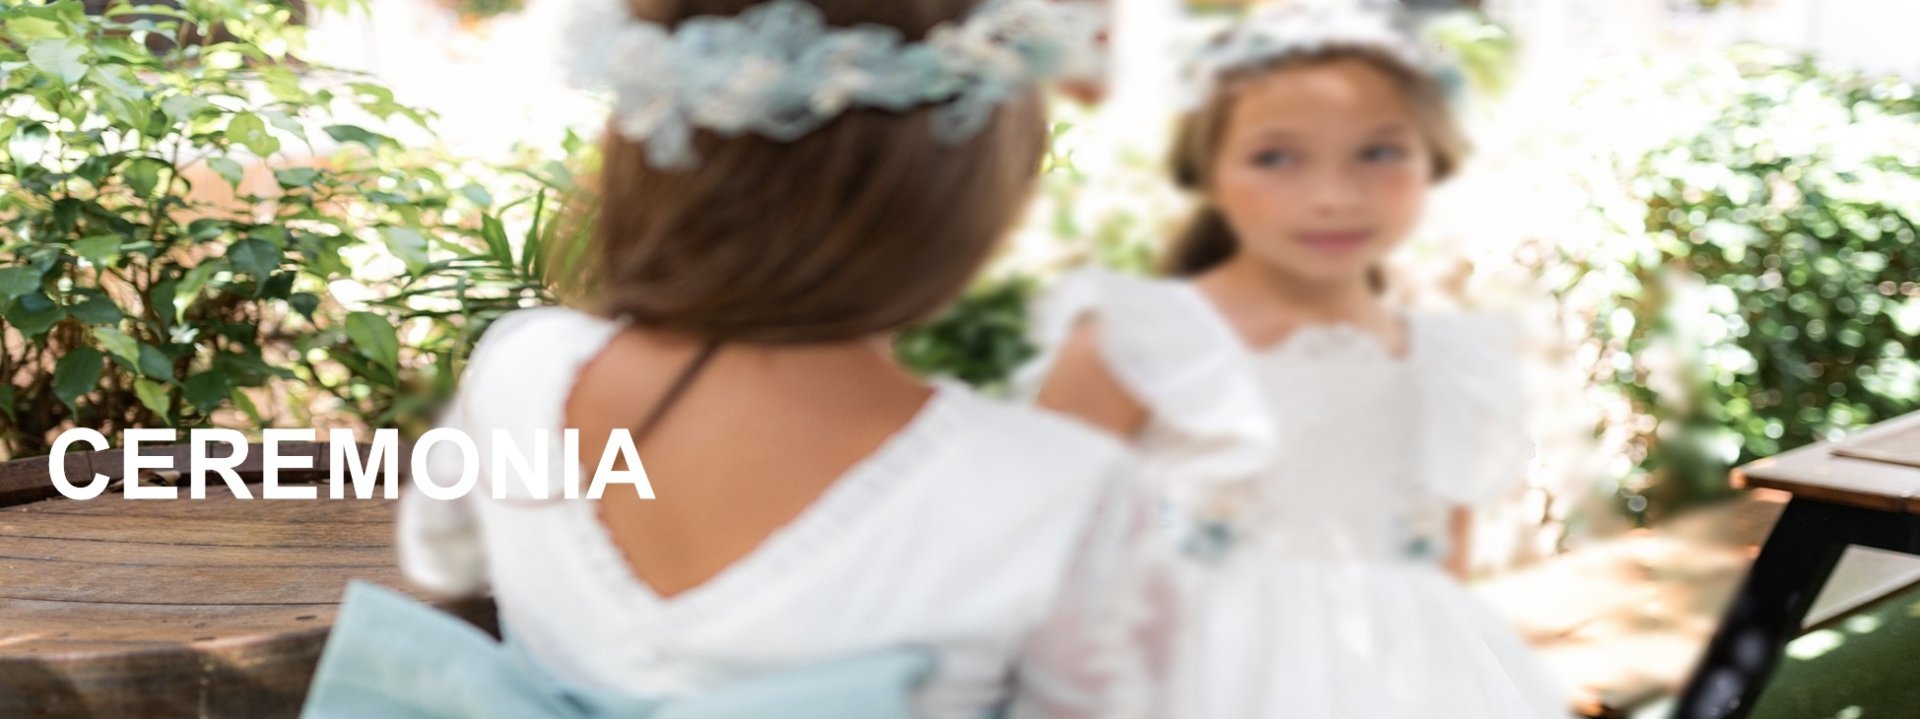 vestidos-ceremonia-niña-online-para-niñas-y-niños.jpg